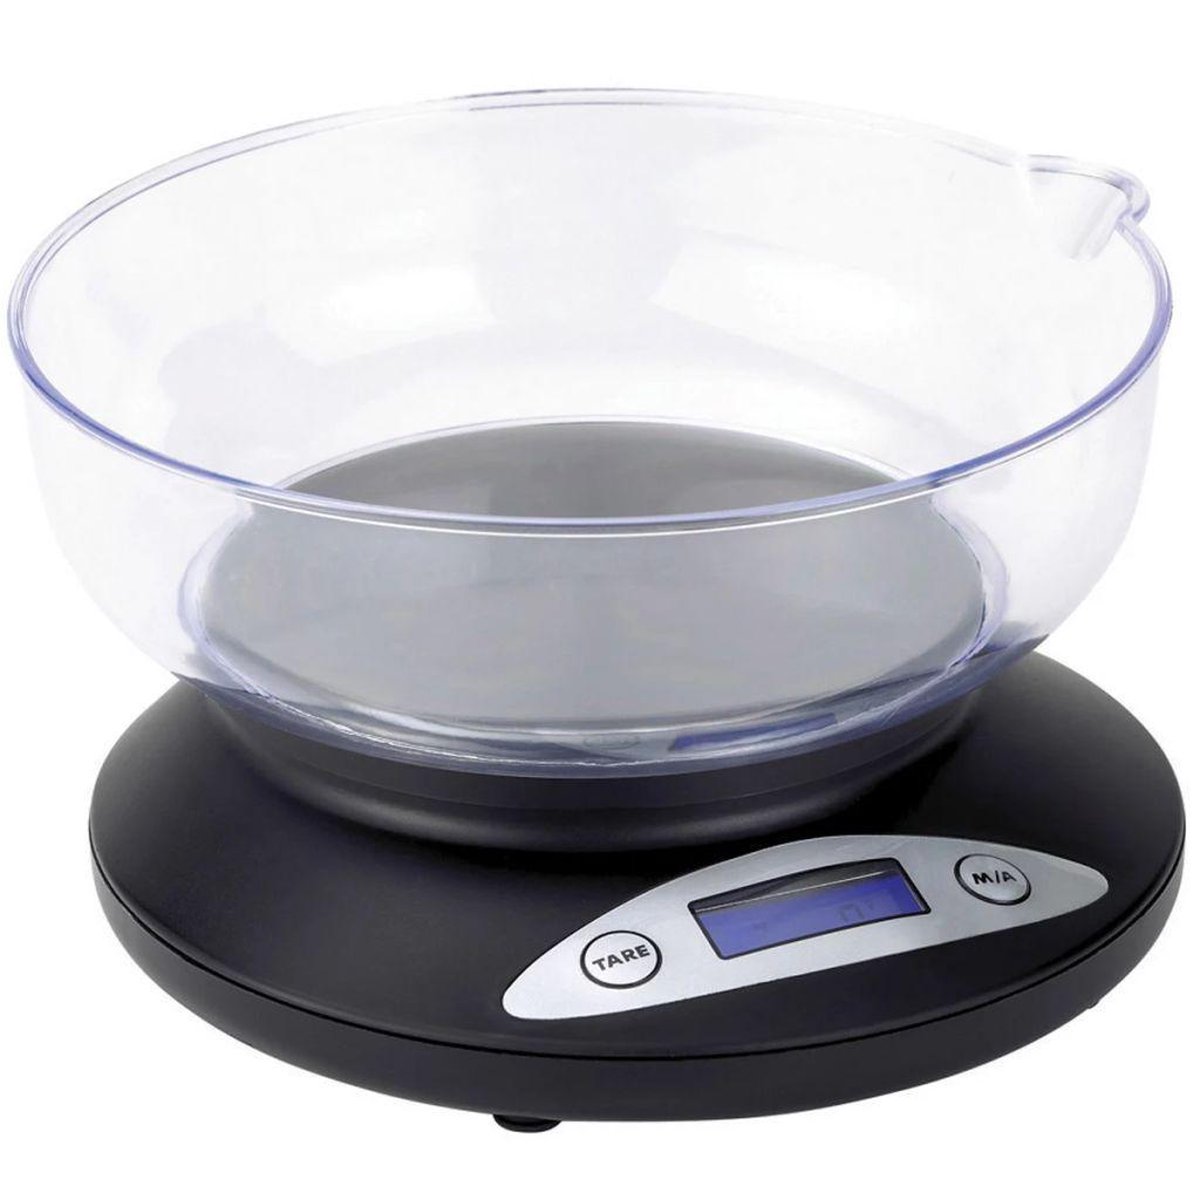 Keukenweegschaal Tristar KW-2430 - Digitale keukenweegschaal met kom - Tot 2 kilogram - Zwart
